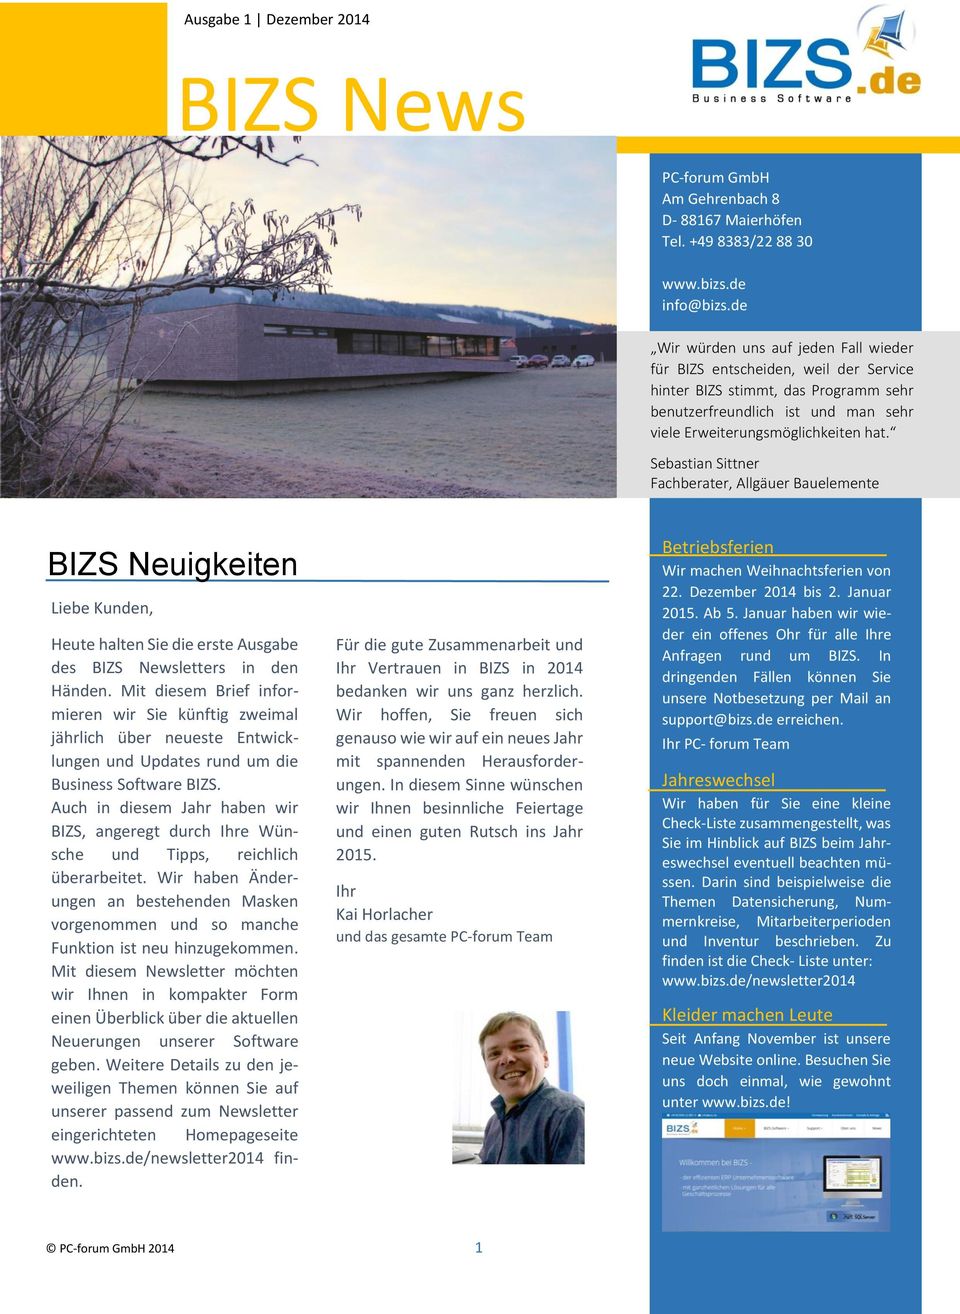 Sebastian Sittner Fachberater, Allgäuer Bauelemente BIZS Neuigkeiten Liebe Kunden, Heute halten Sie die erste Ausgabe des BIZS Newsletters in den Händen.